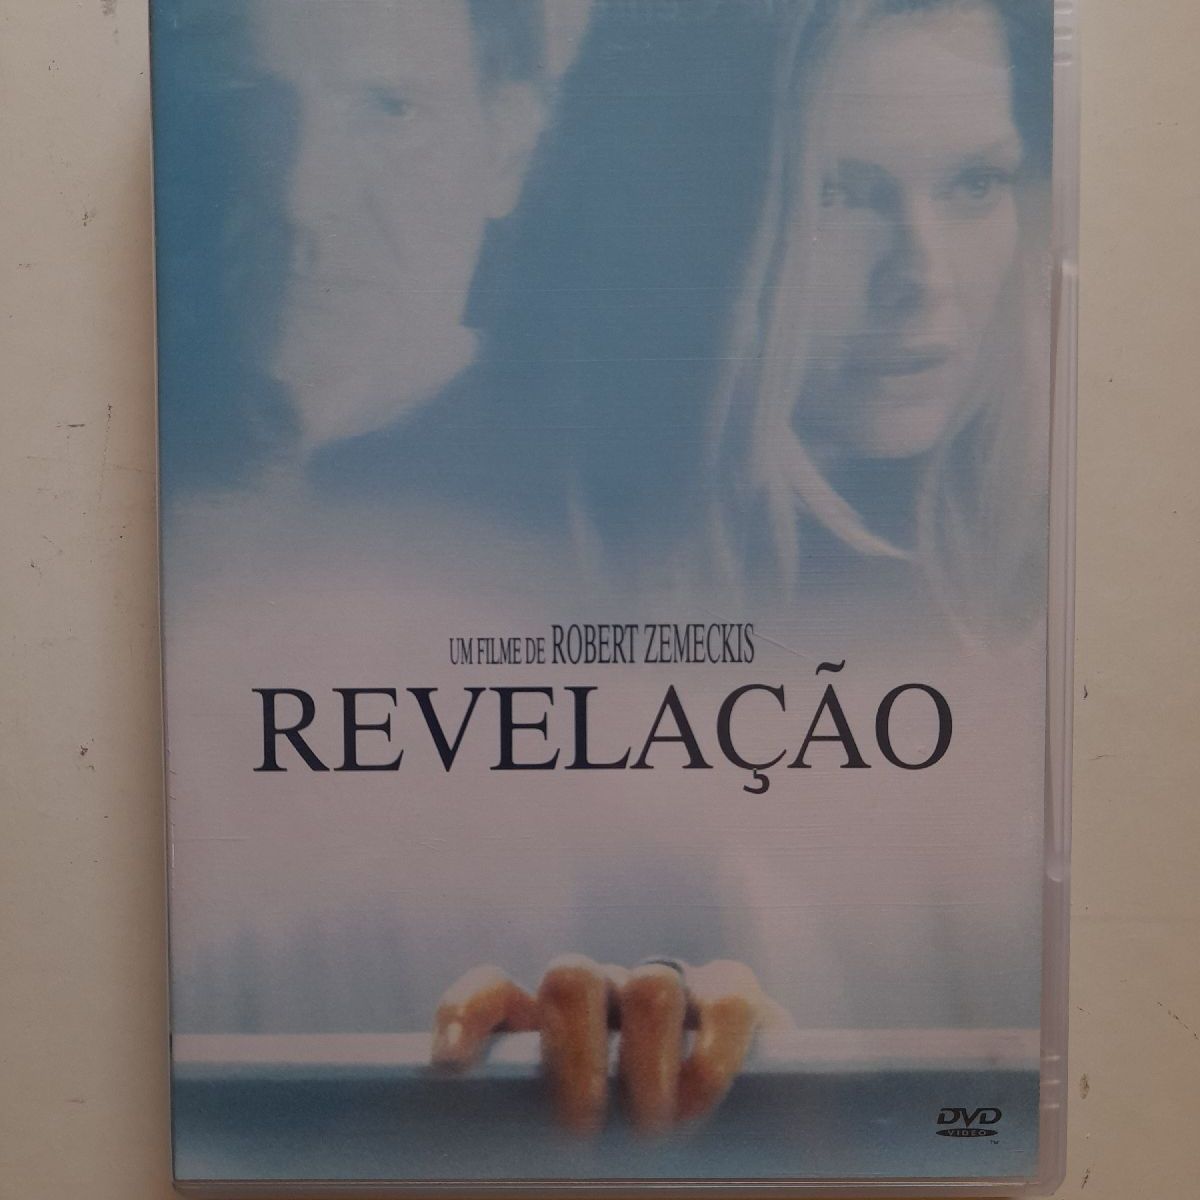 DVD Filme Provas e Trapaças - SEMI-NOVO REVISADO